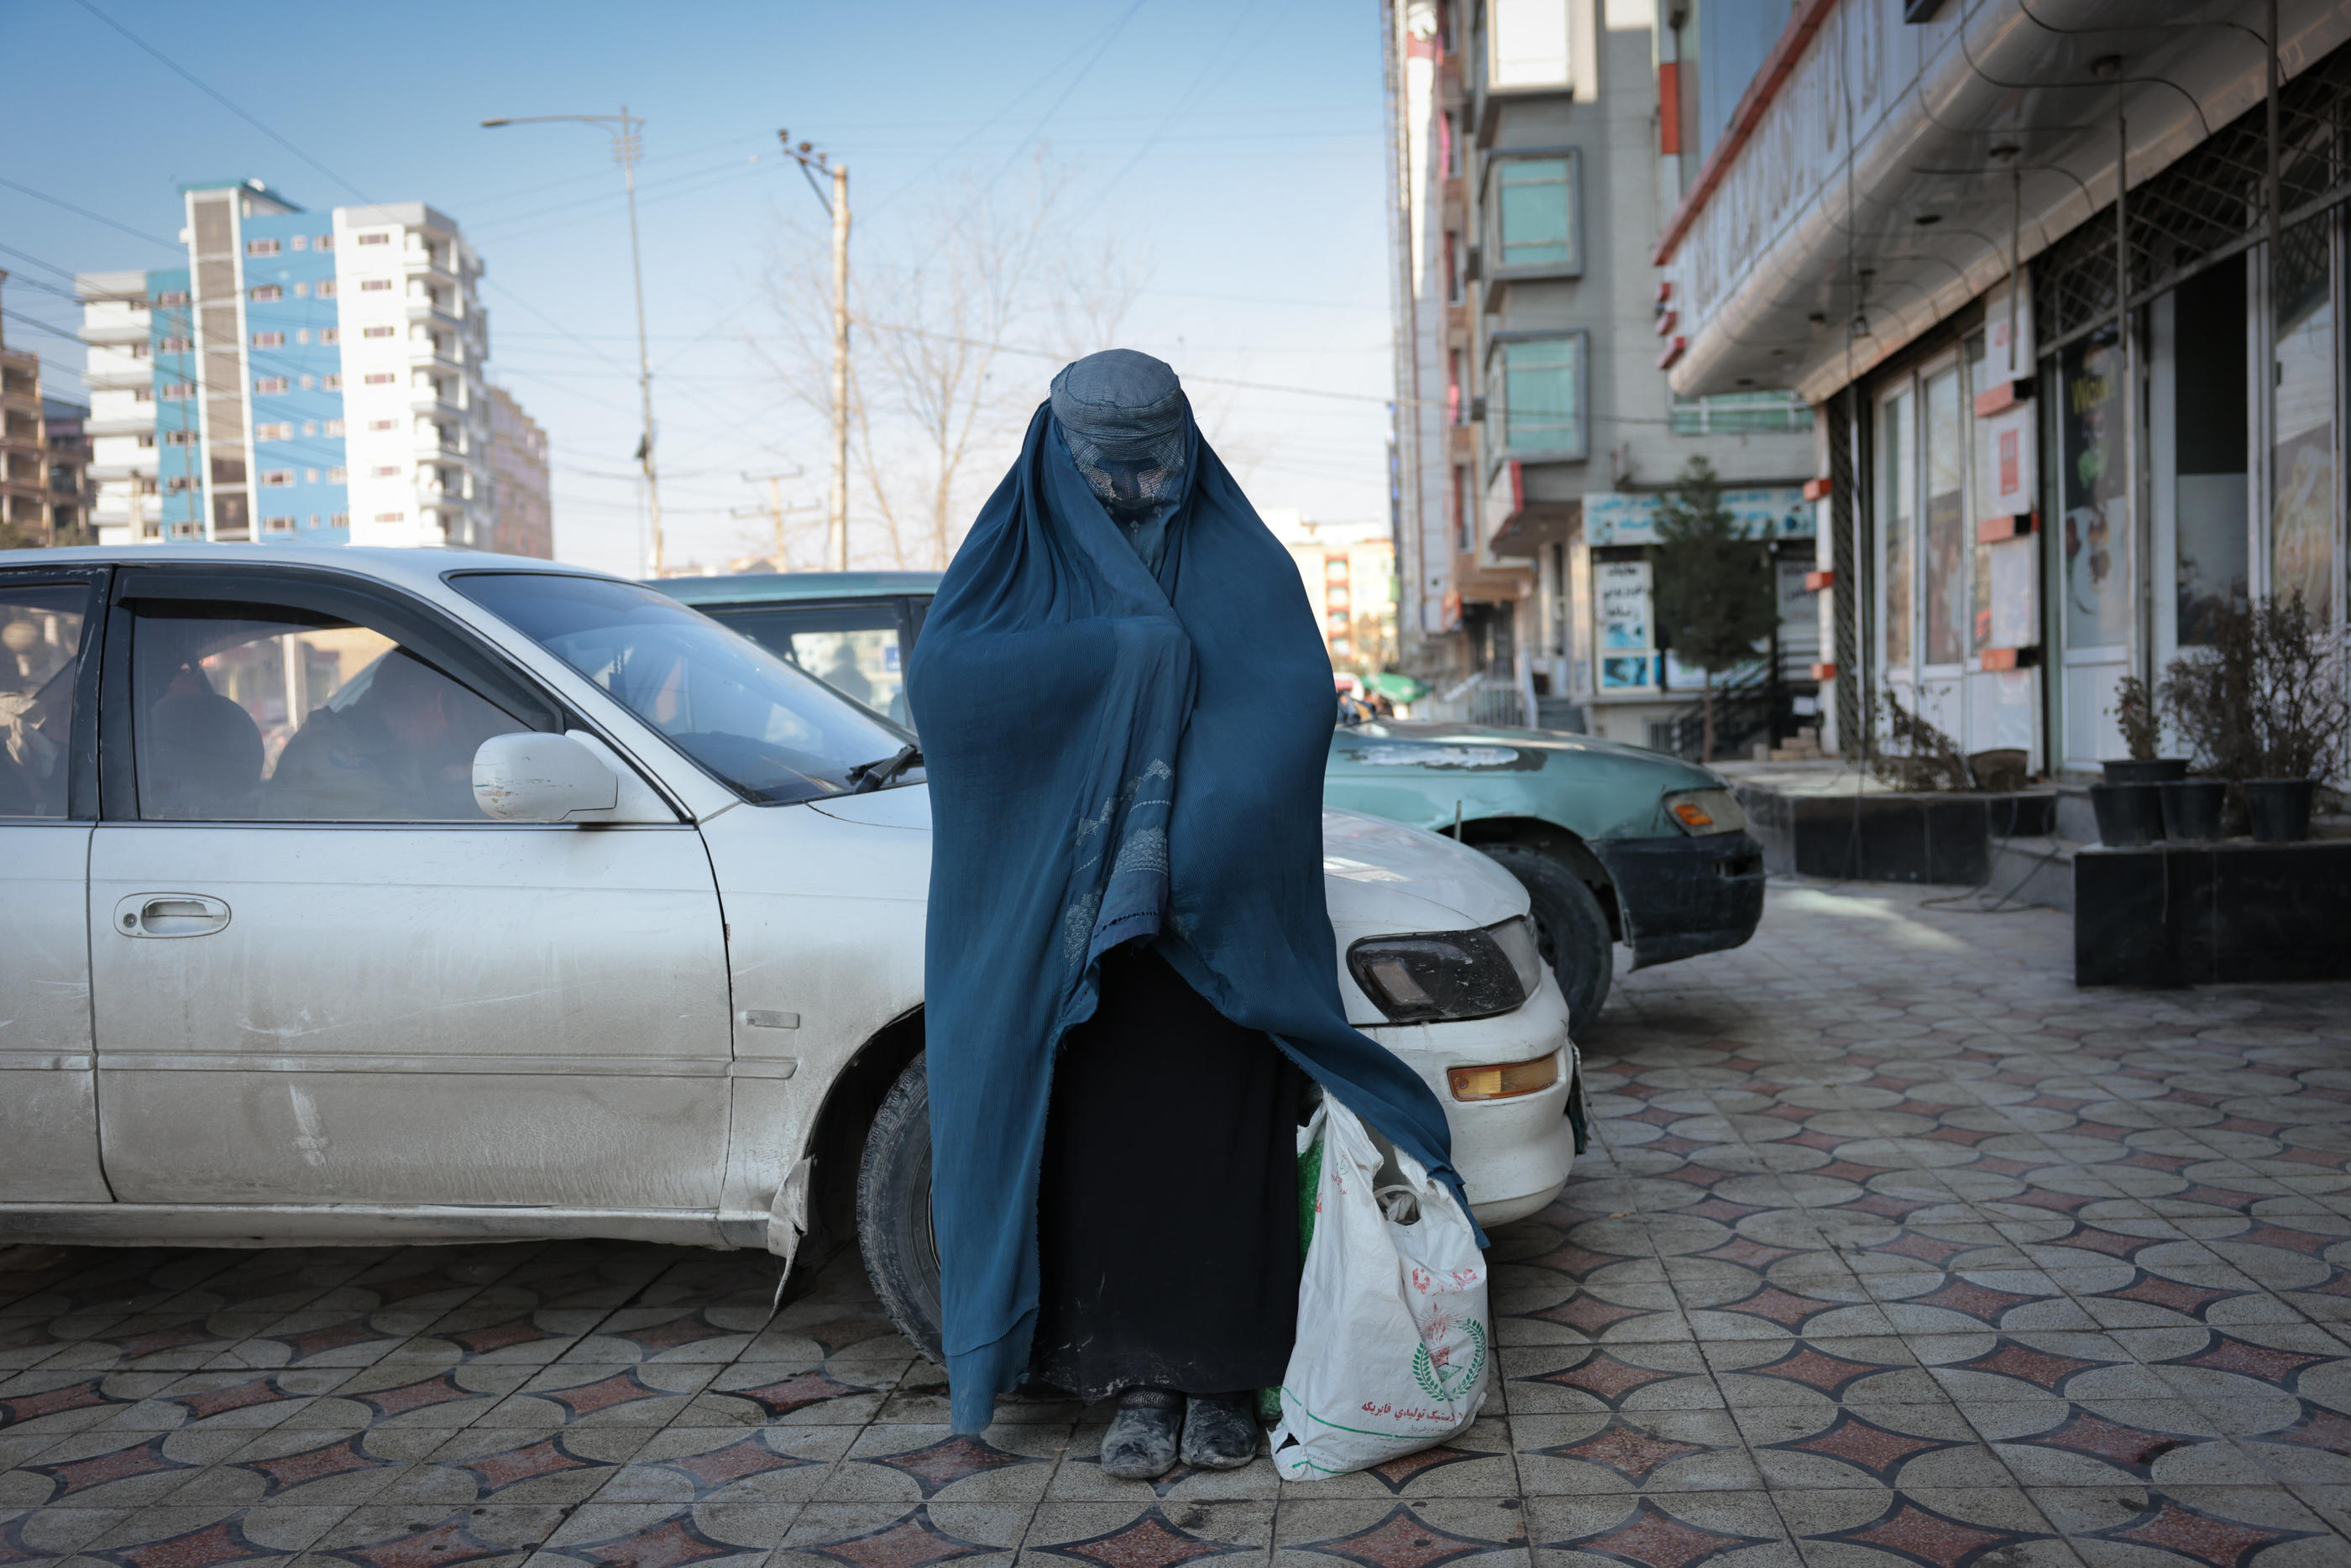 Une femme revêtue d'une burqa et réduite à la mendicité dans un quartier de Kaboul (Afghanistan), en janvier 2021. LP/Philippe de Poulpiquet